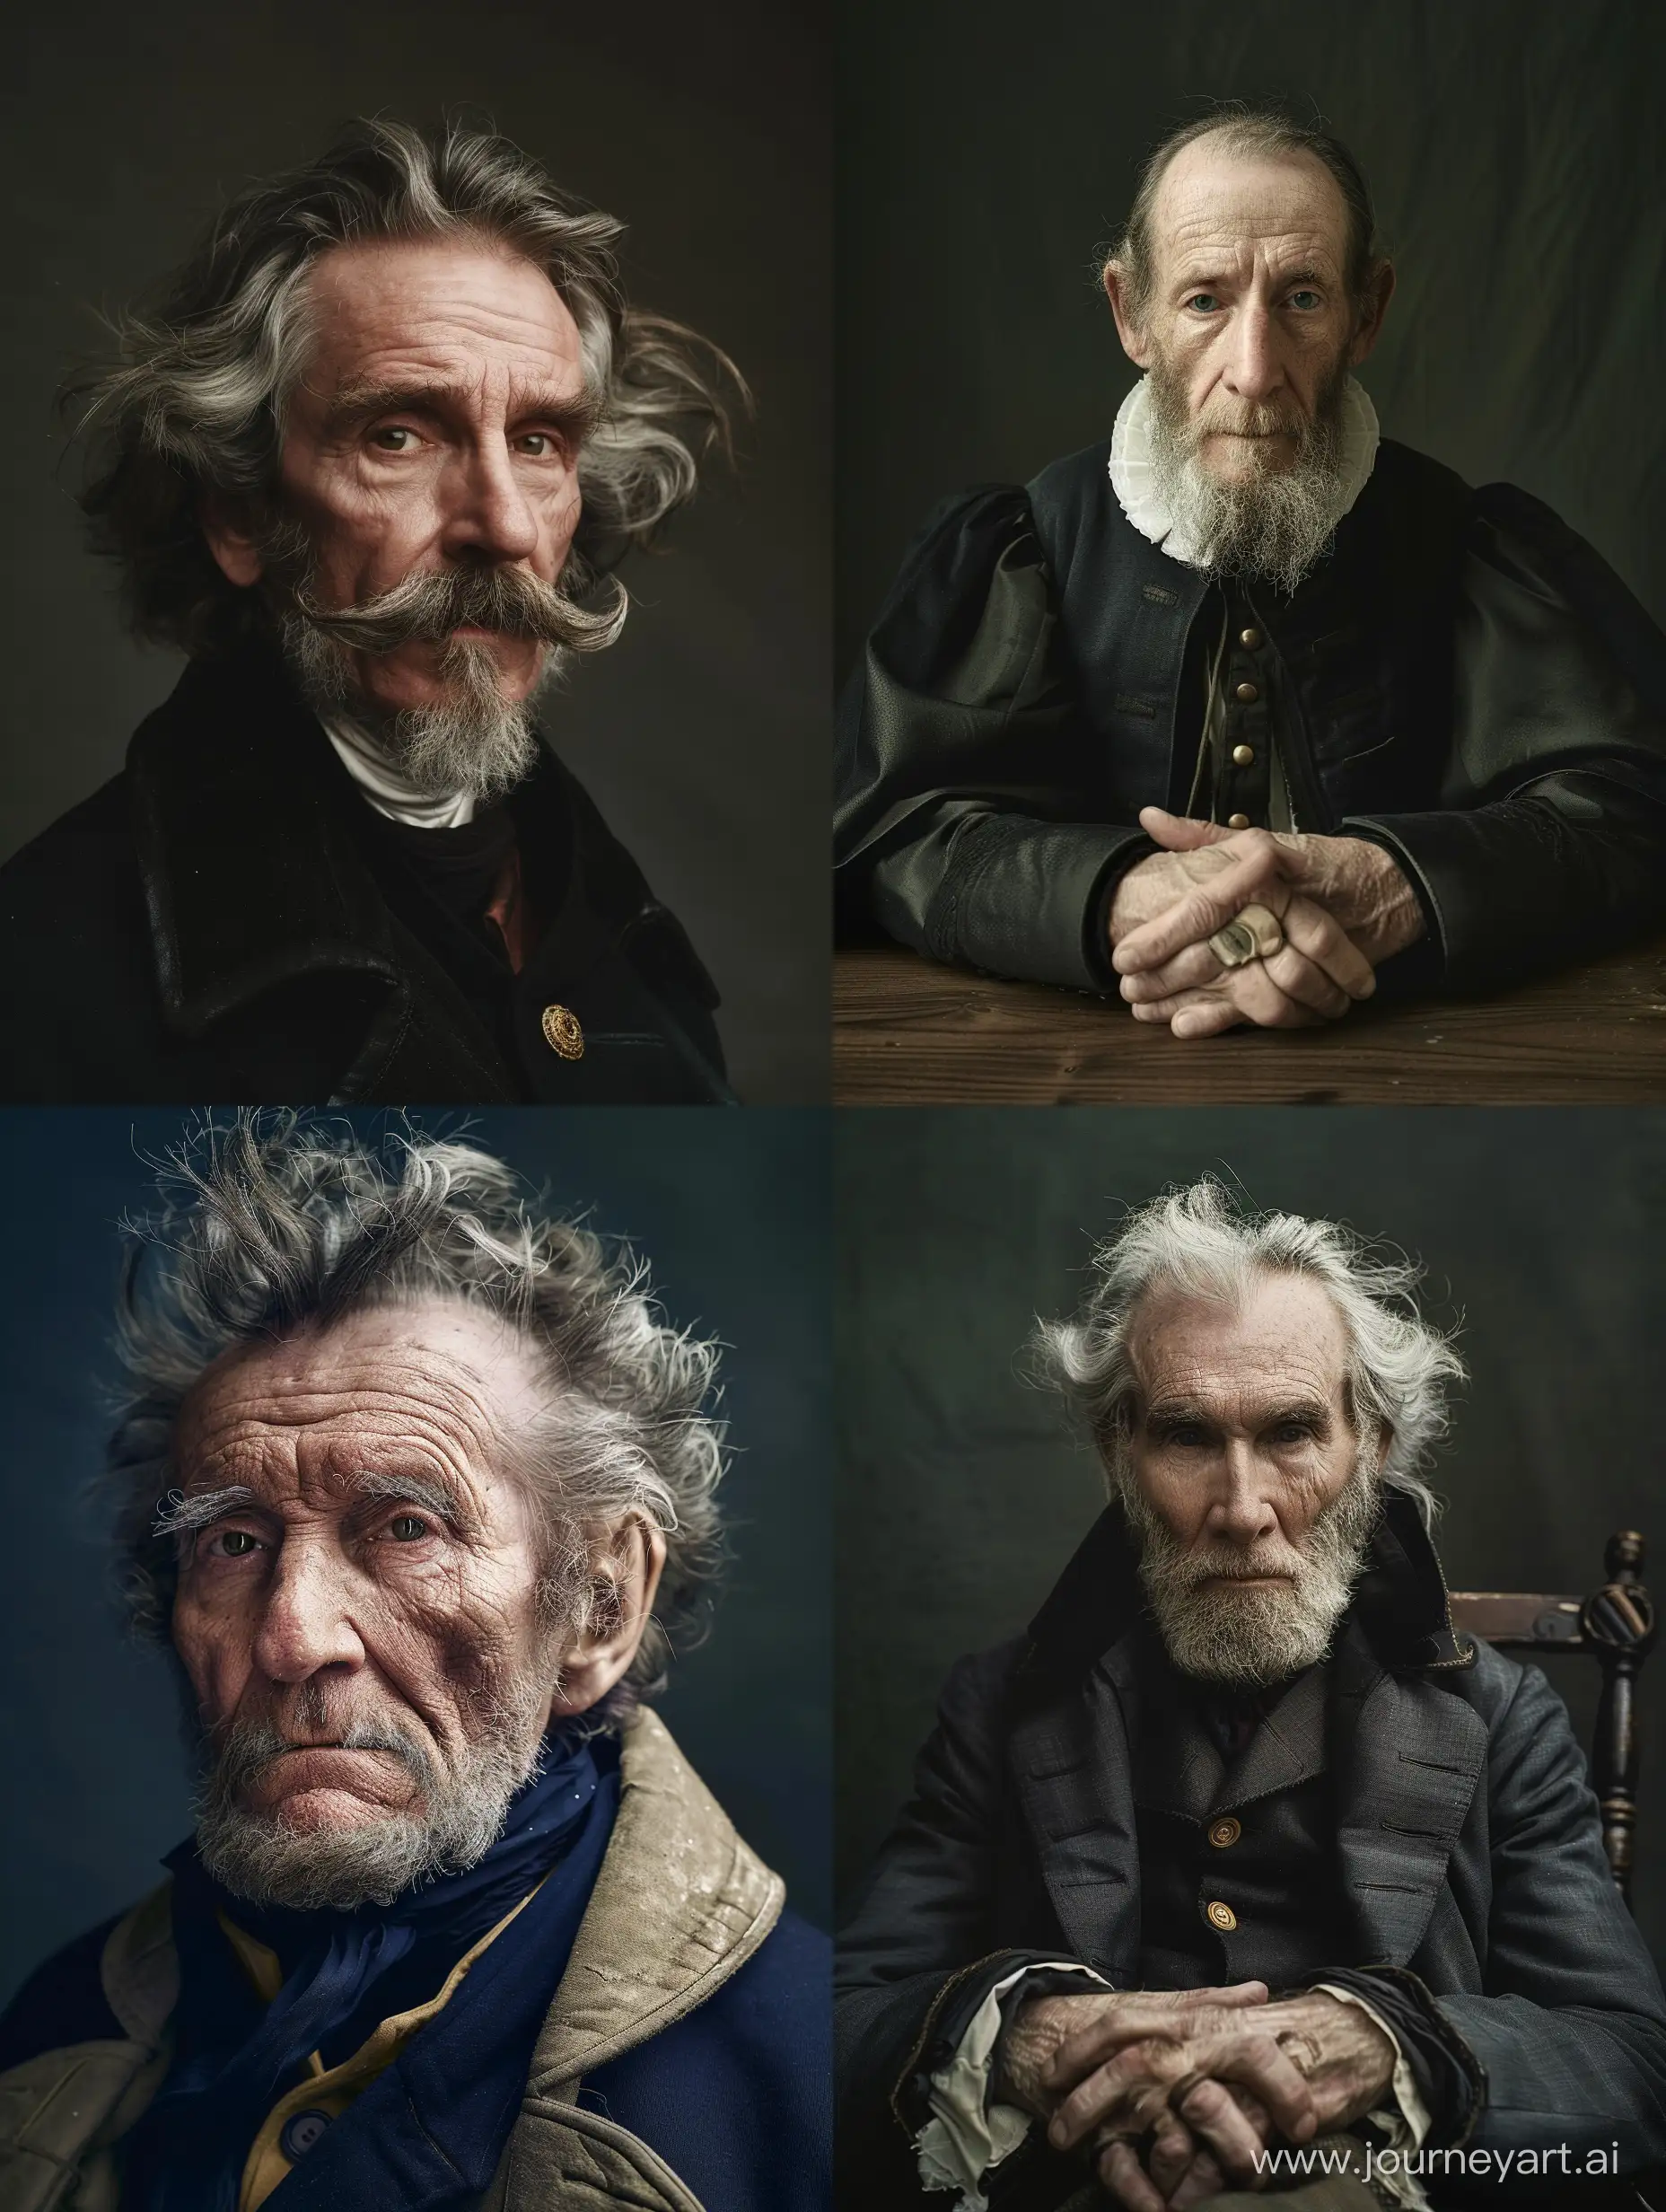 Photographic-Portrait-of-William-Defoe-by-Brett-Walker-in-Raw-Style